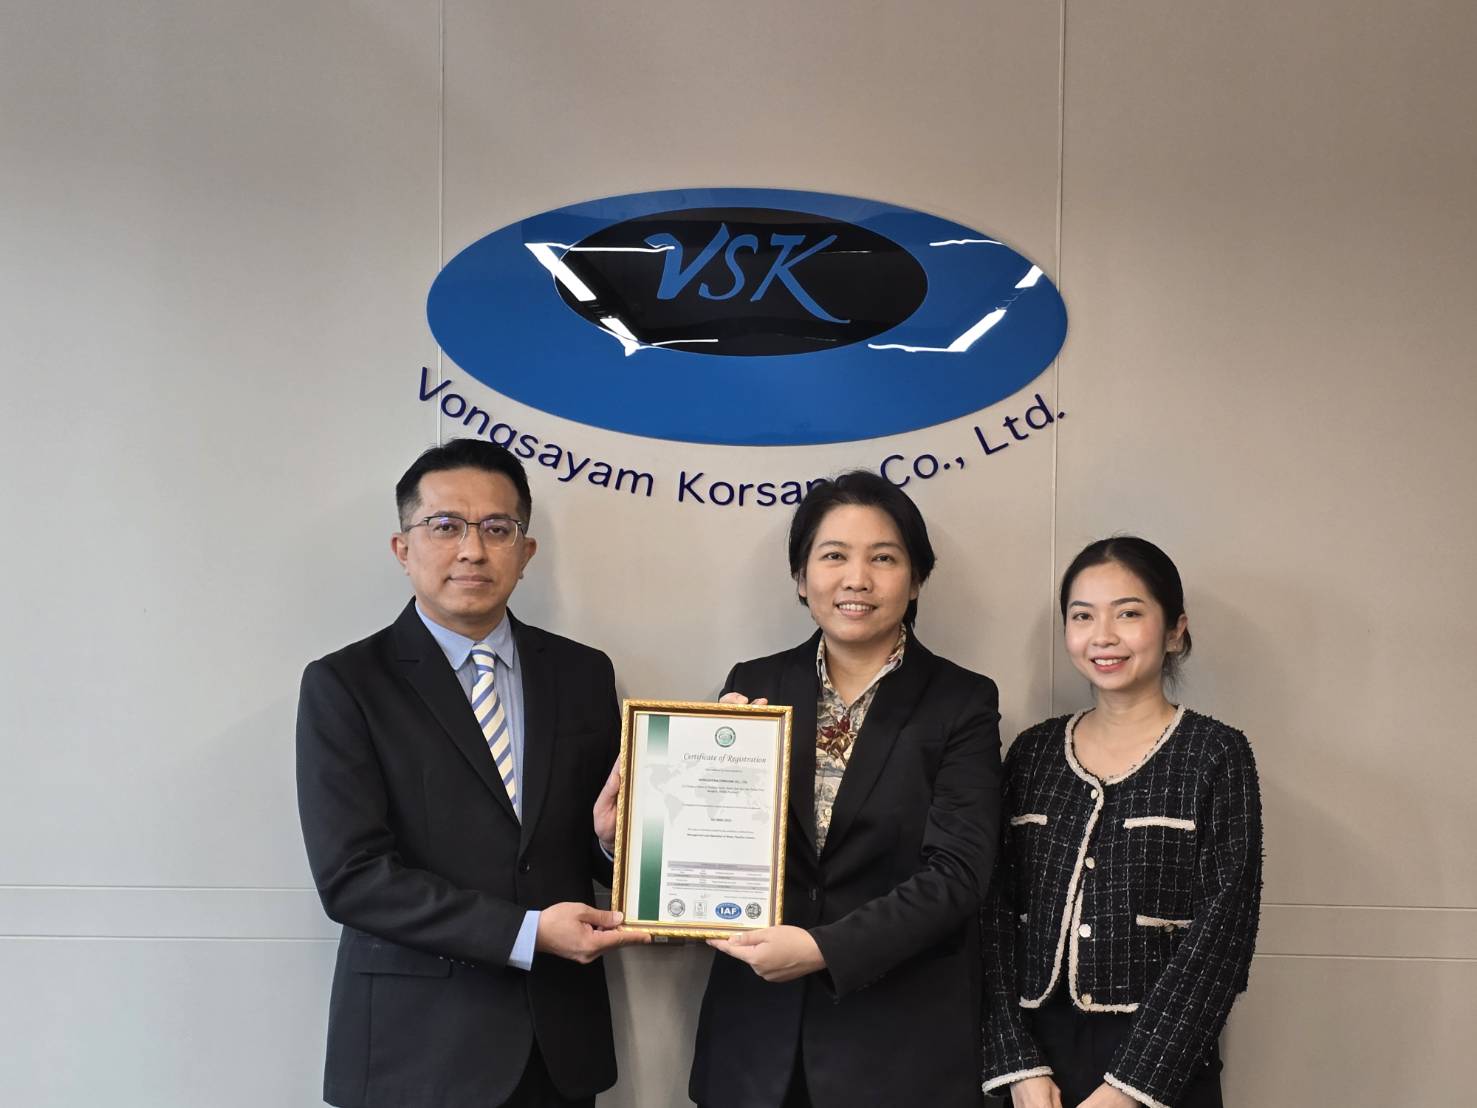 Vongsayam Korsang Co., Ltd_ISO 9001